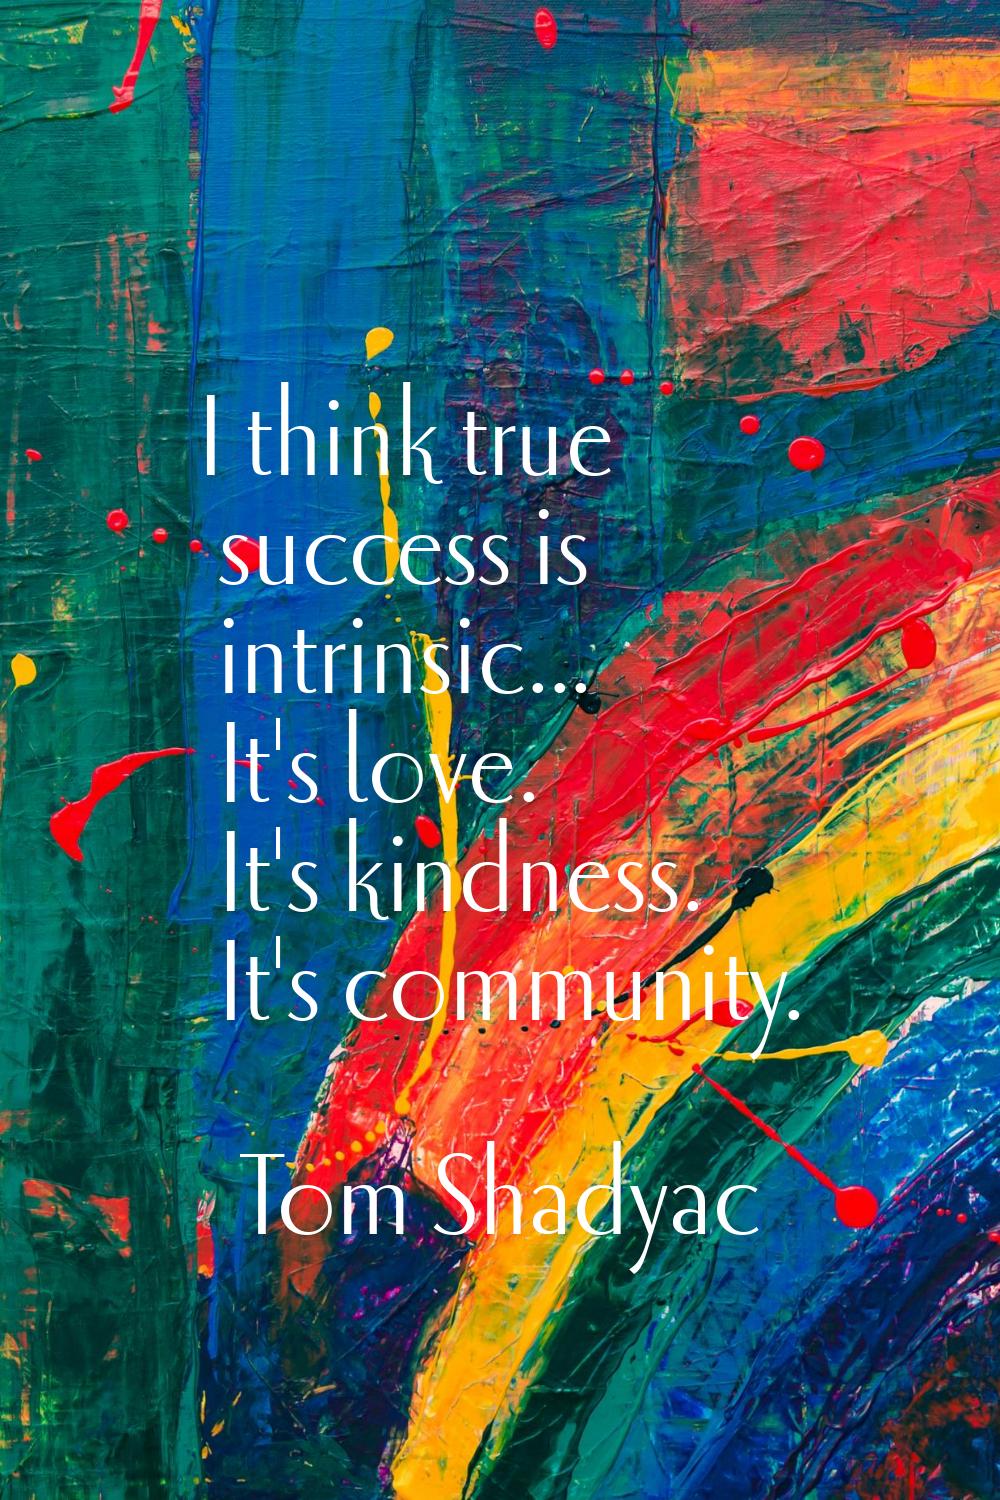 I think true success is intrinsic... It's love. It's kindness. It's community.